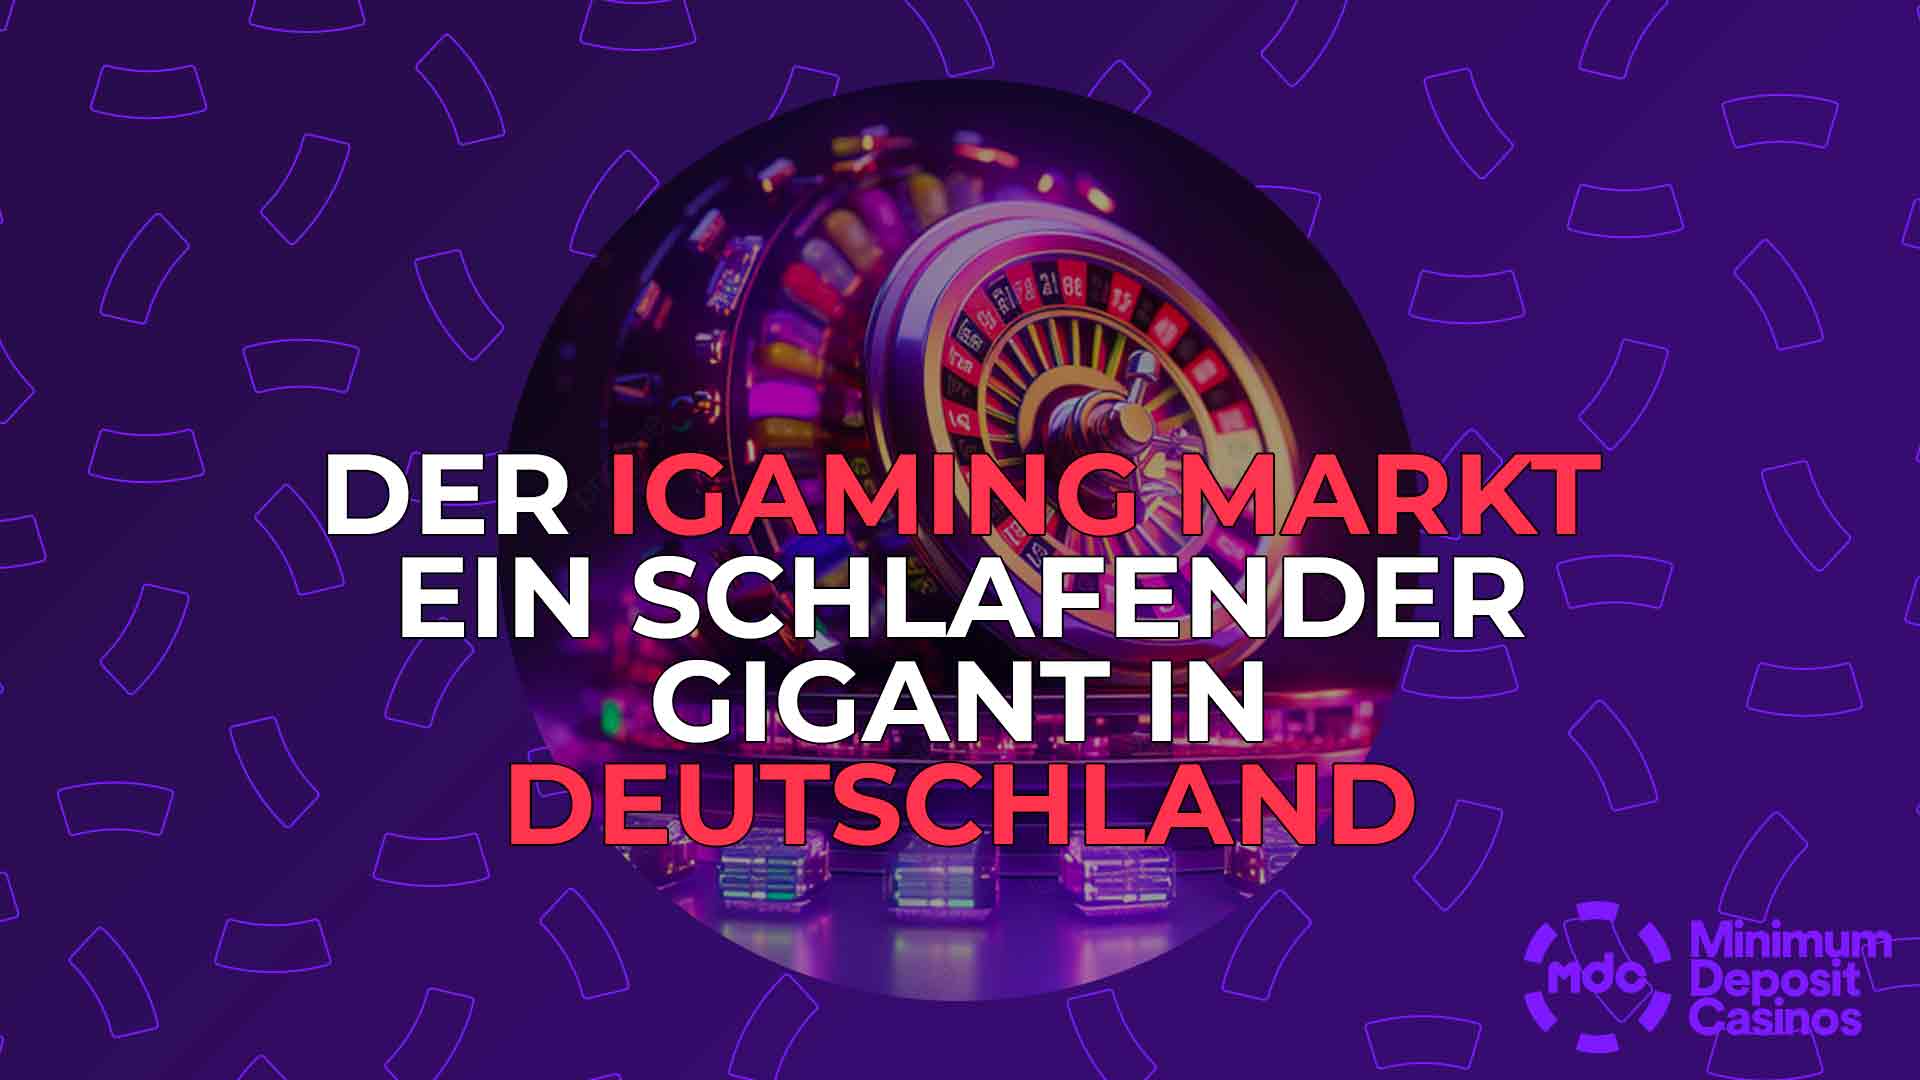 Der iGaming Markt ein schlafender Gigant in Deutschland